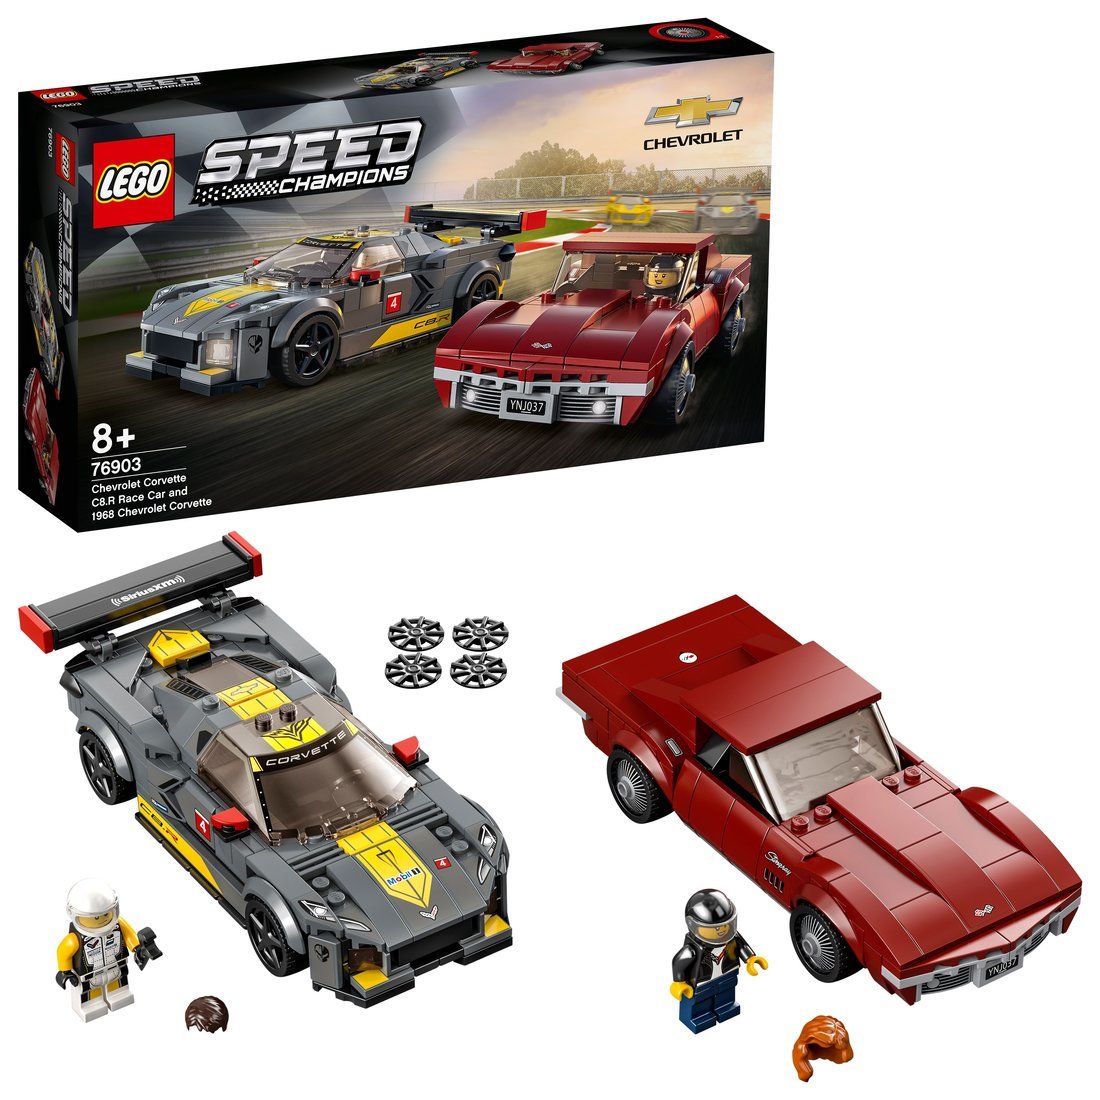 Констр-р LEGO Speed Champions Chevrolet Corvette C8.R and 1968 Chevrolet Corvette